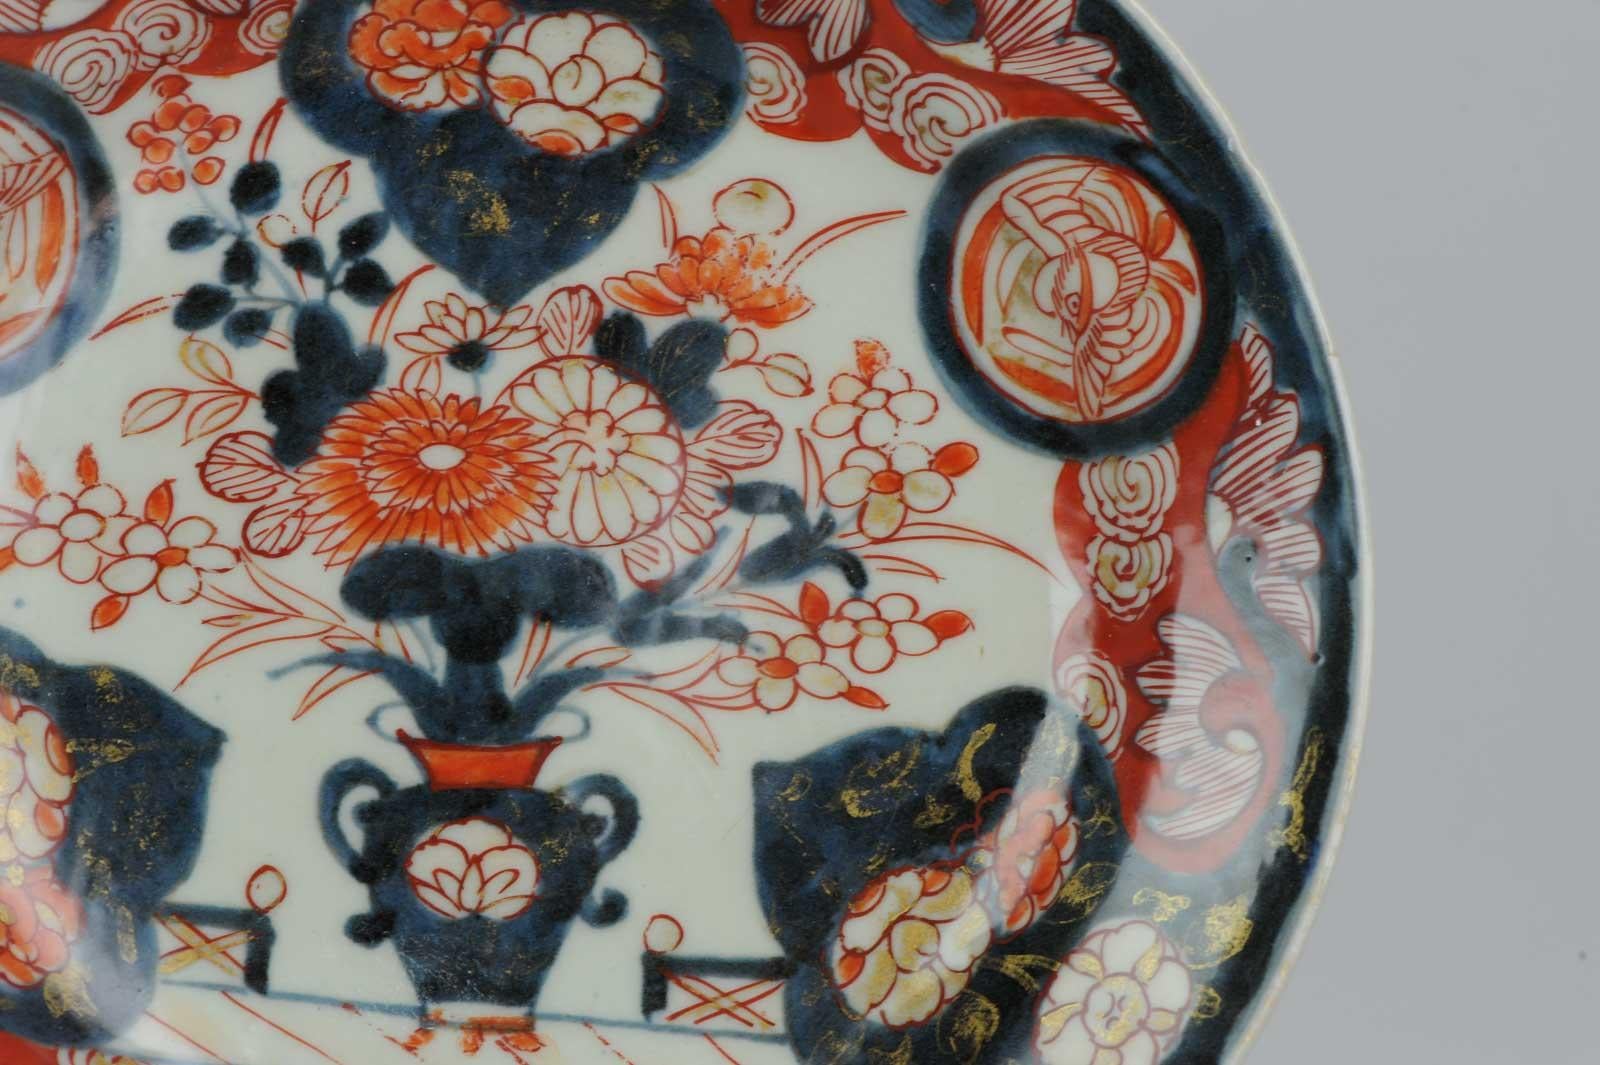 Antique circa 1700 Japanese Imari Porcelain Plates Arita Edo Flowers 7